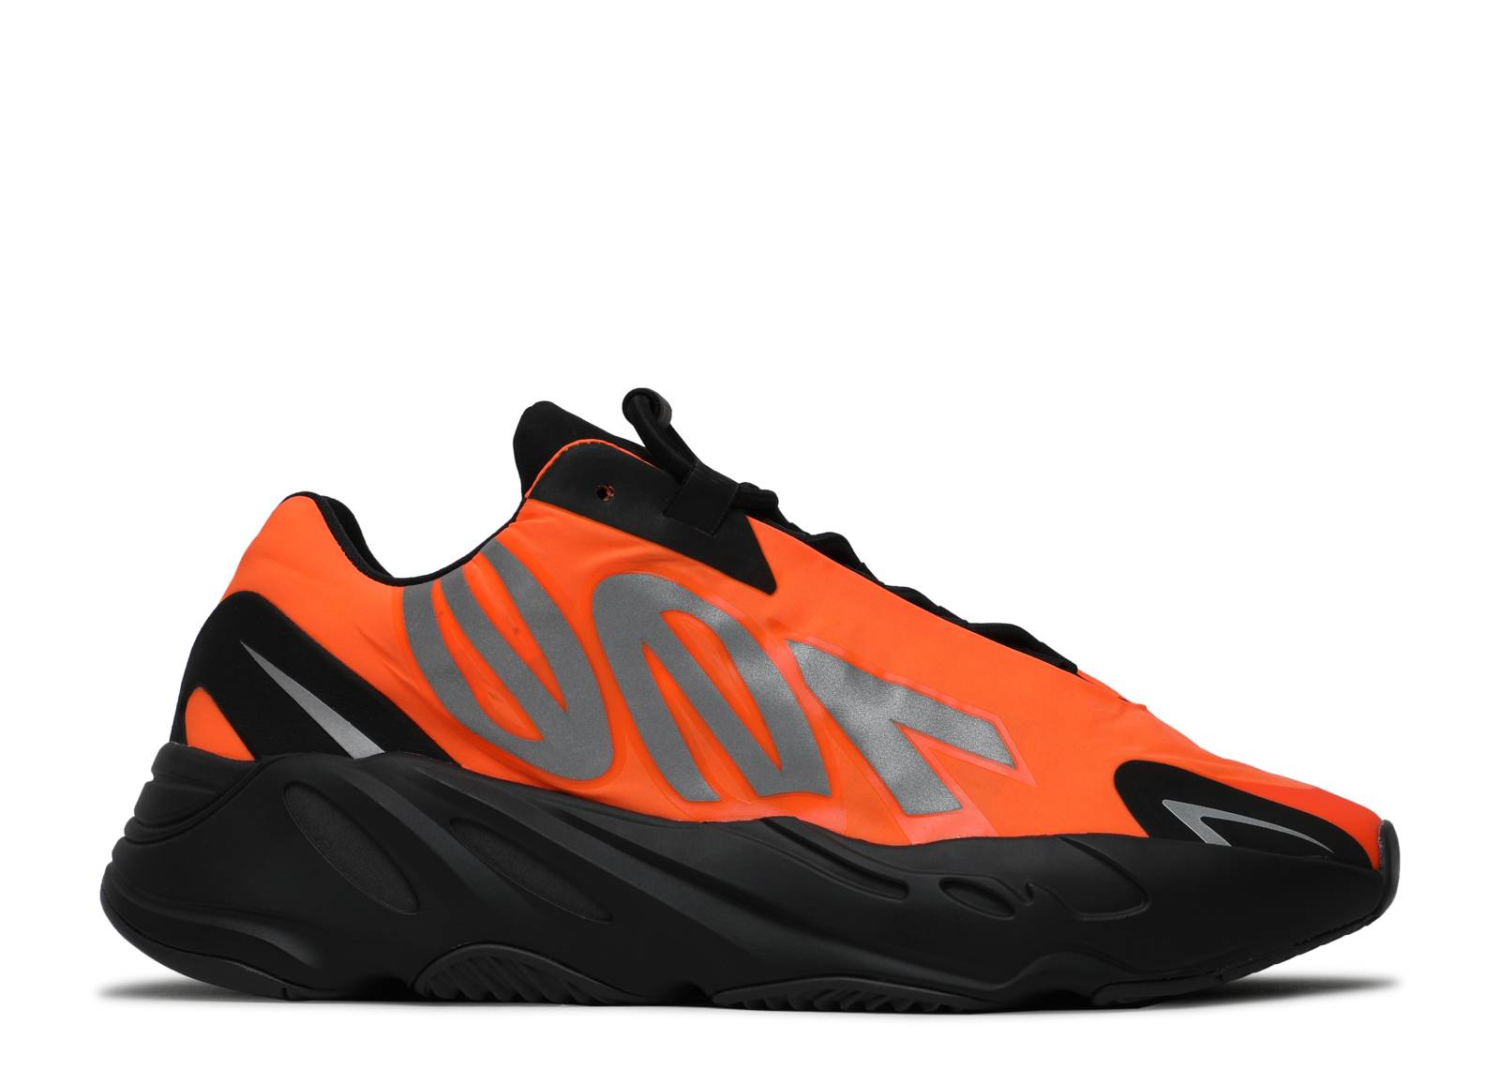 US$ 127.98 - Yeezy Boost 700 Shoes MNVN Orange – FV3258 - www ...